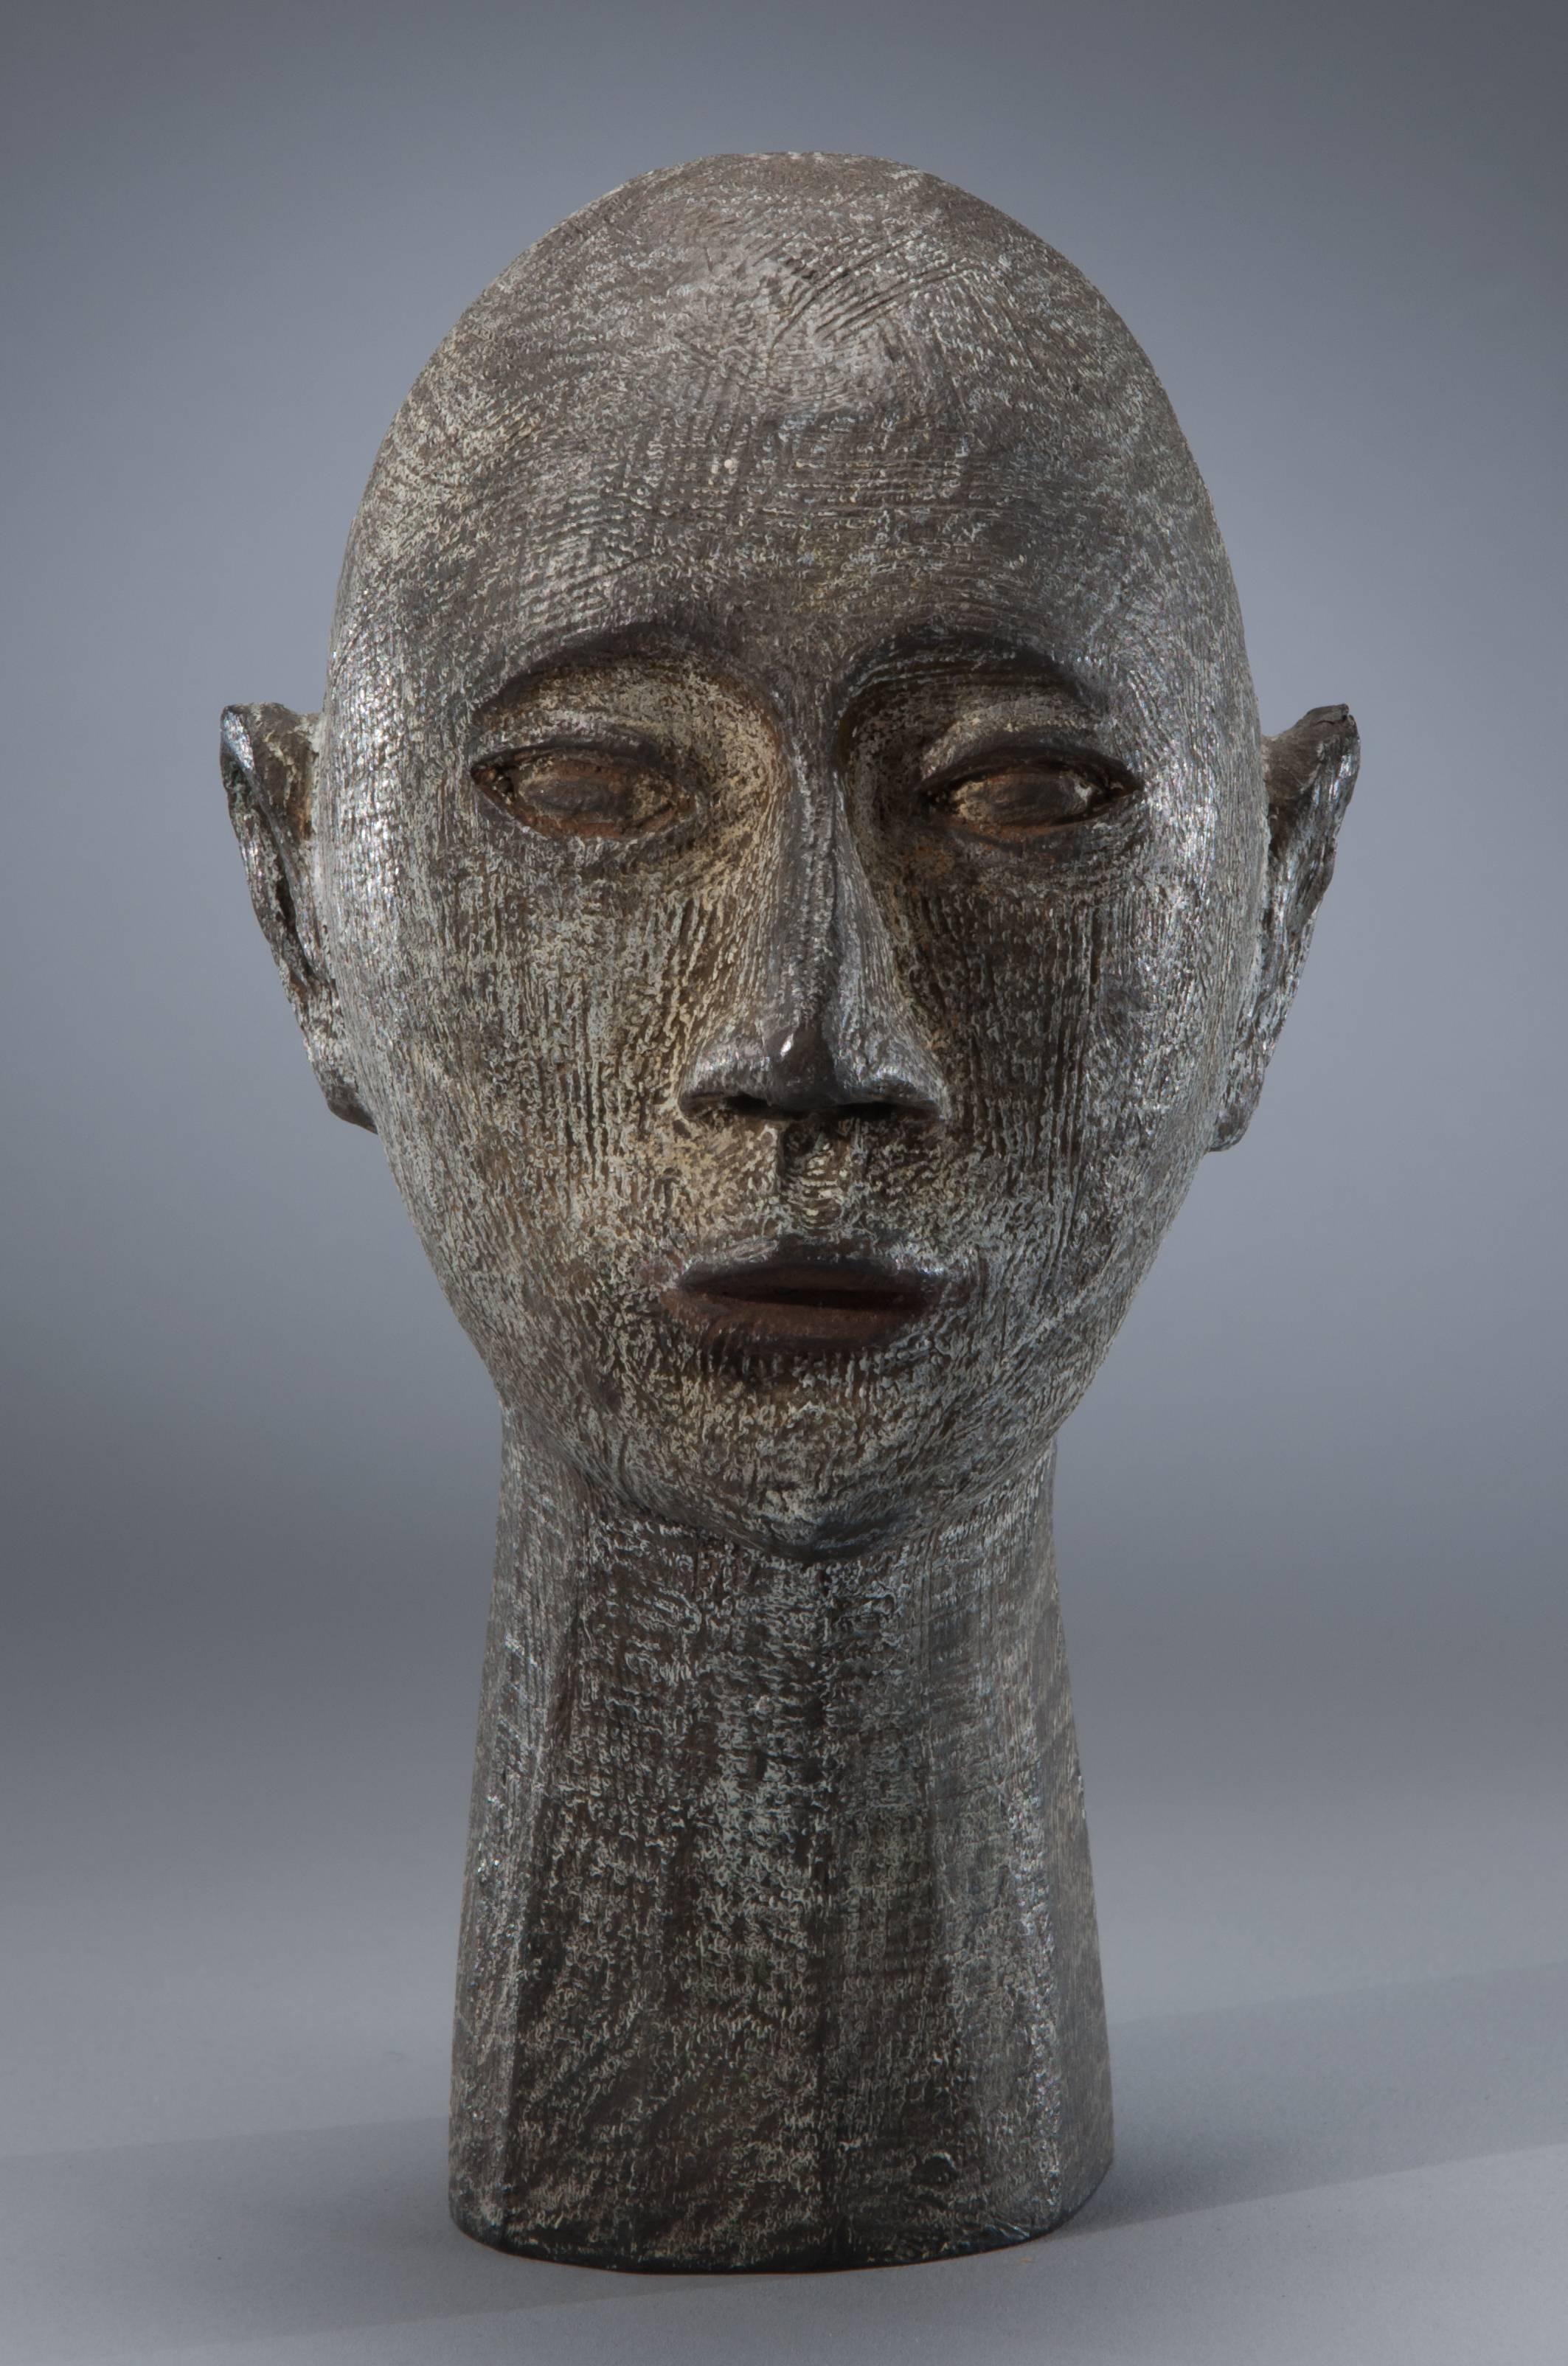 Joe Brubaker Figurative Sculpture - Michael